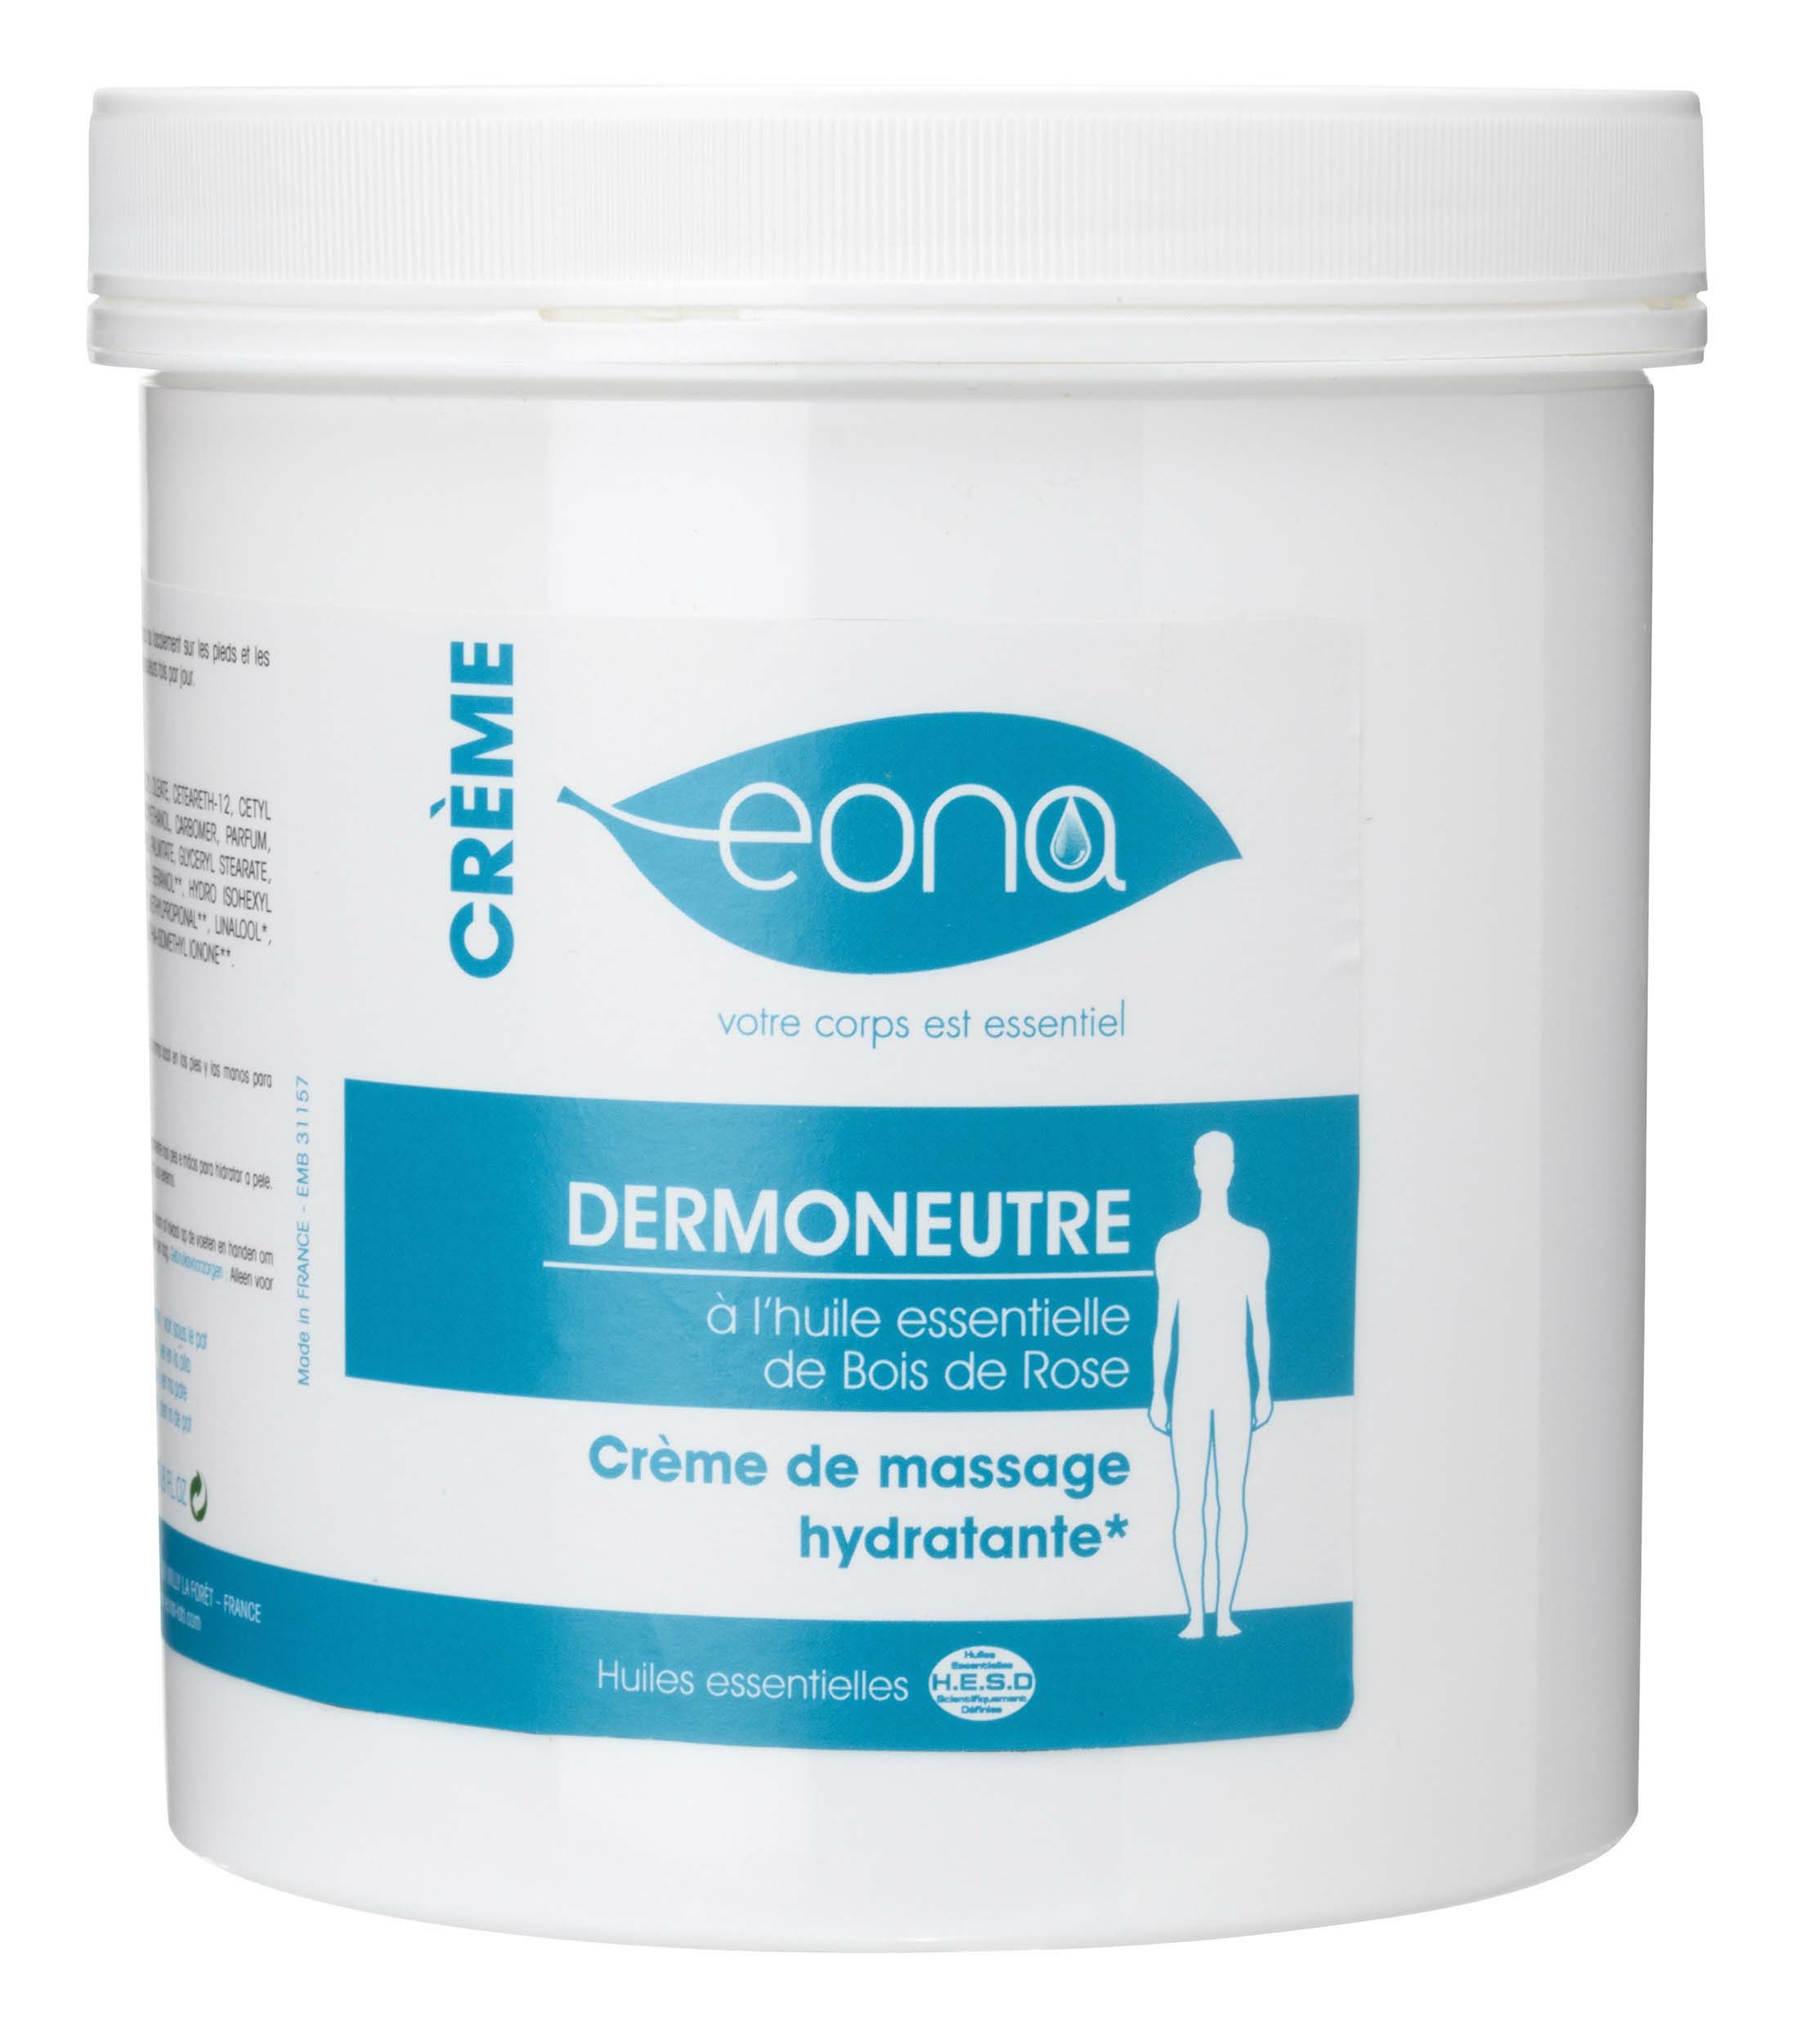 crème de massage eona 1 litre dermoneutre aux huiles essentielles de bois de rose tablelya - 2101417000-1